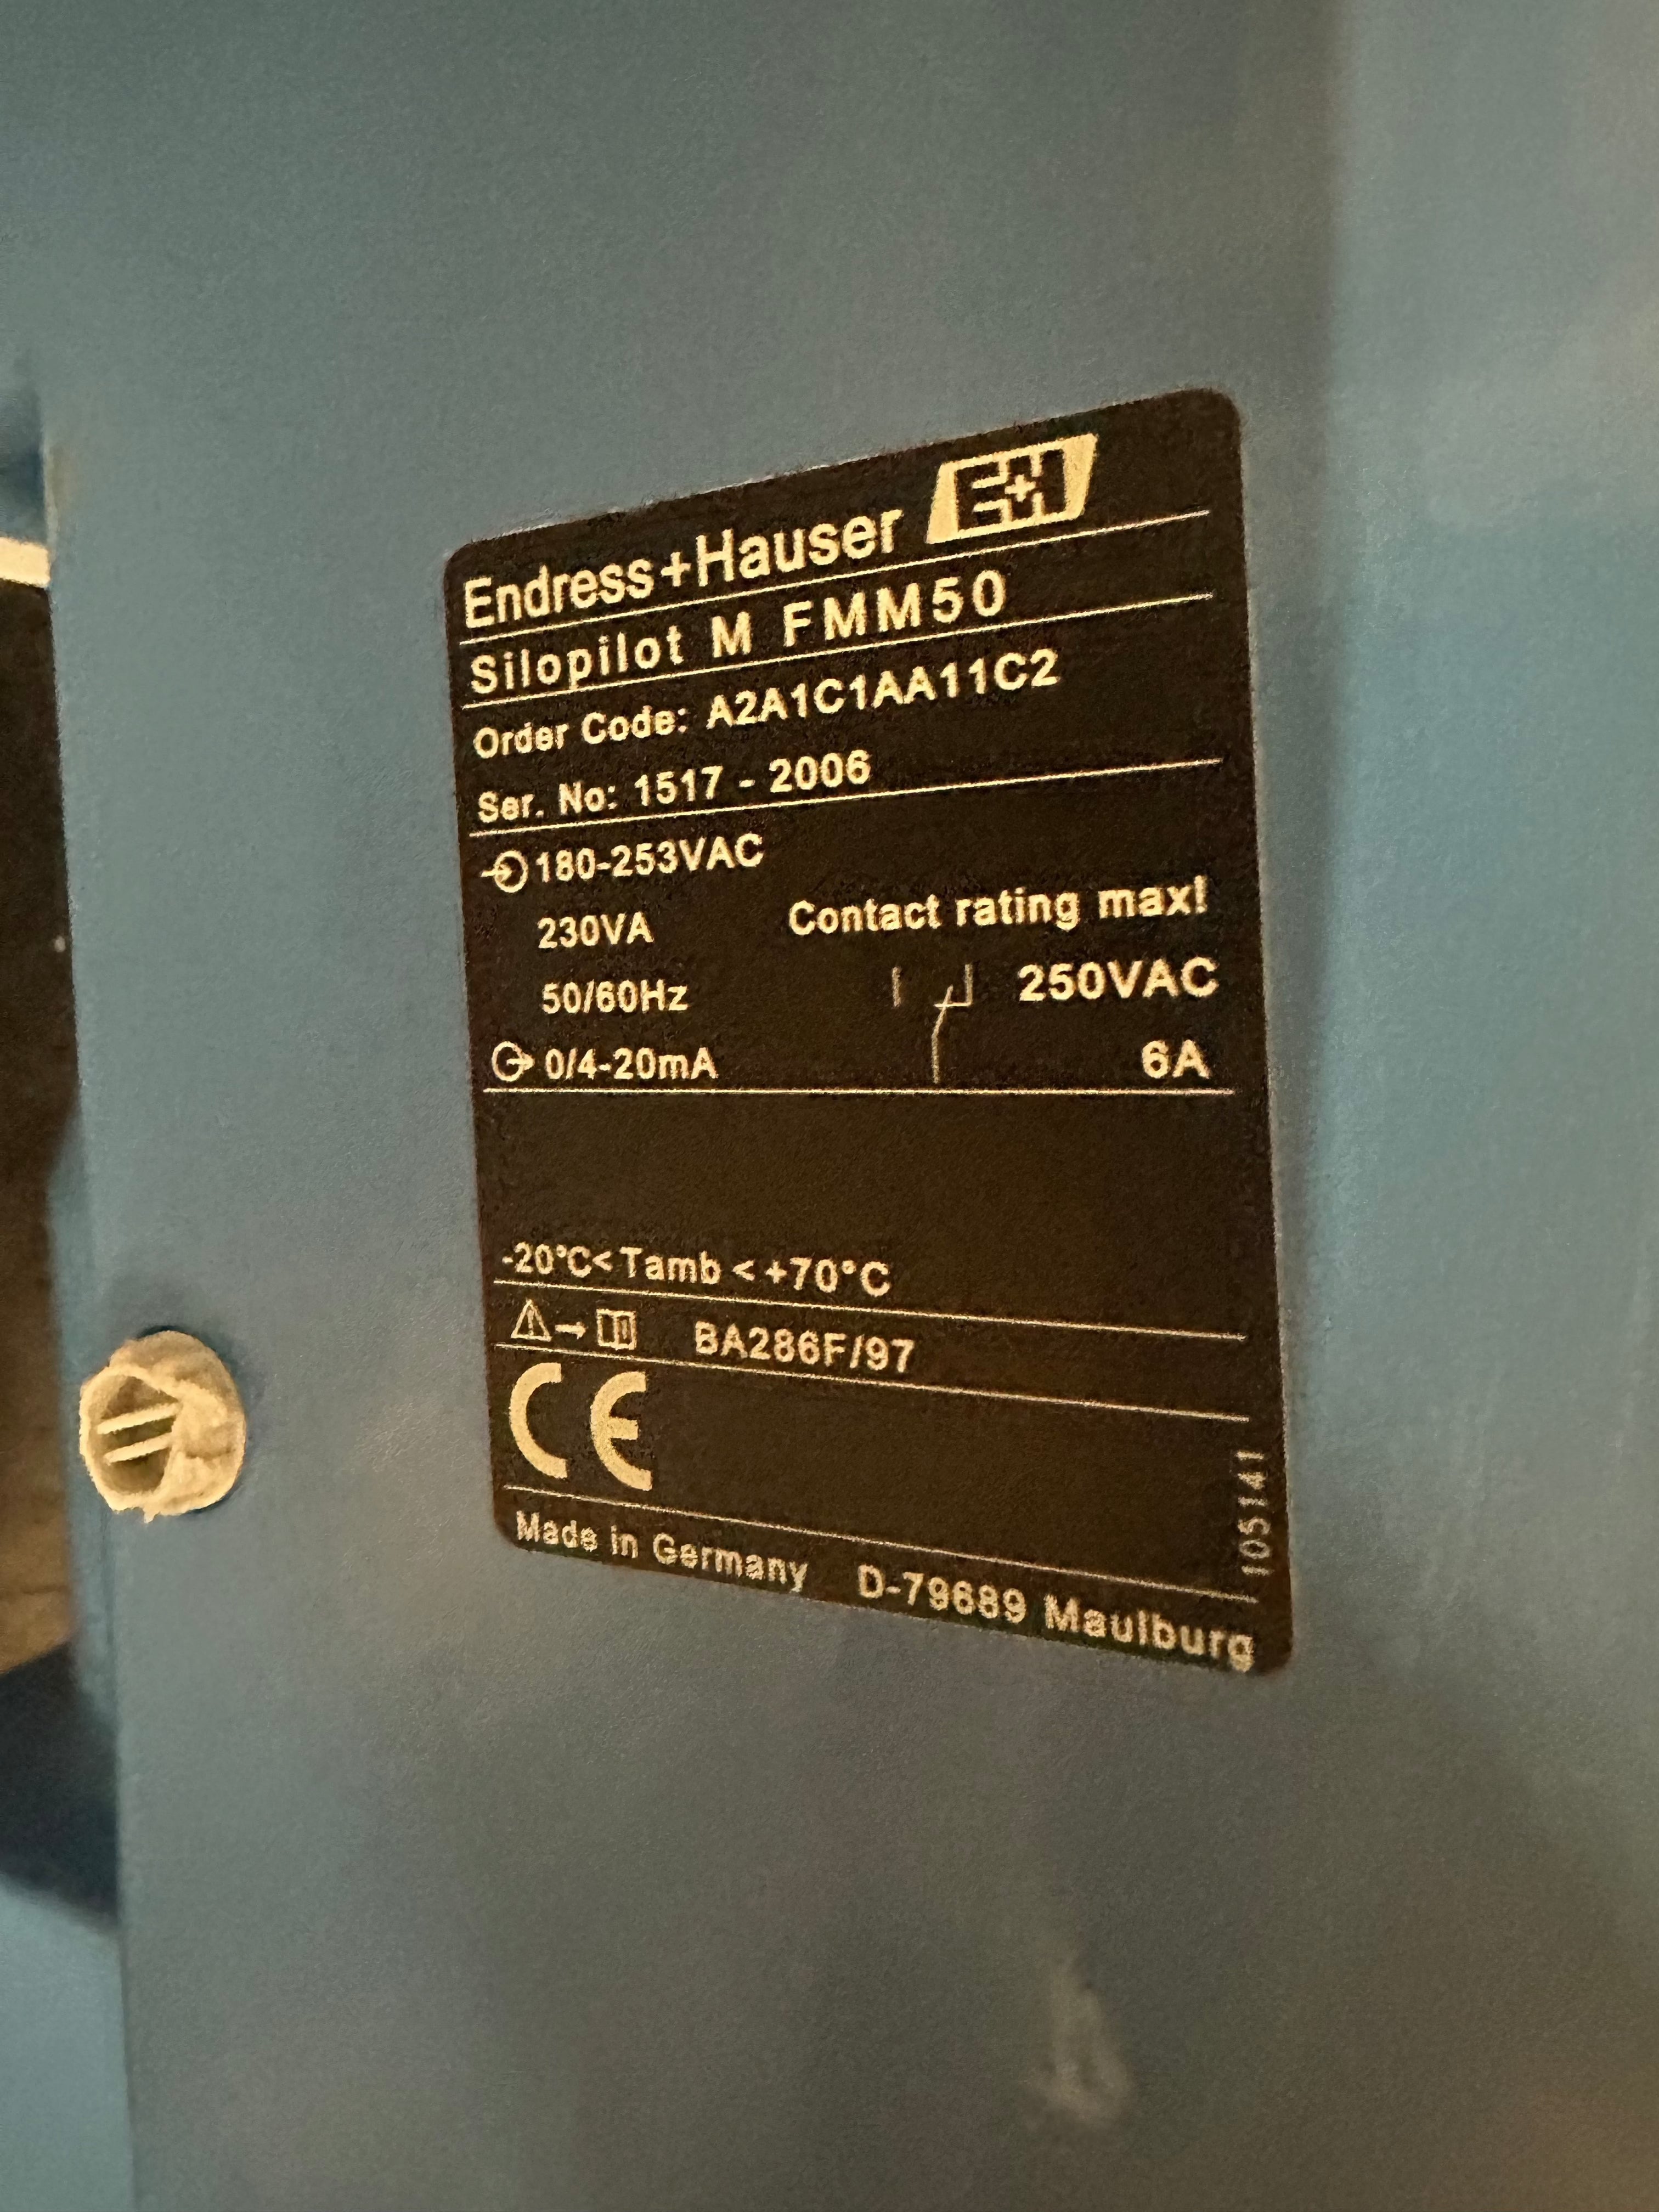 Endress & Hauser electromechanical plumbing system Silopilot FMM50